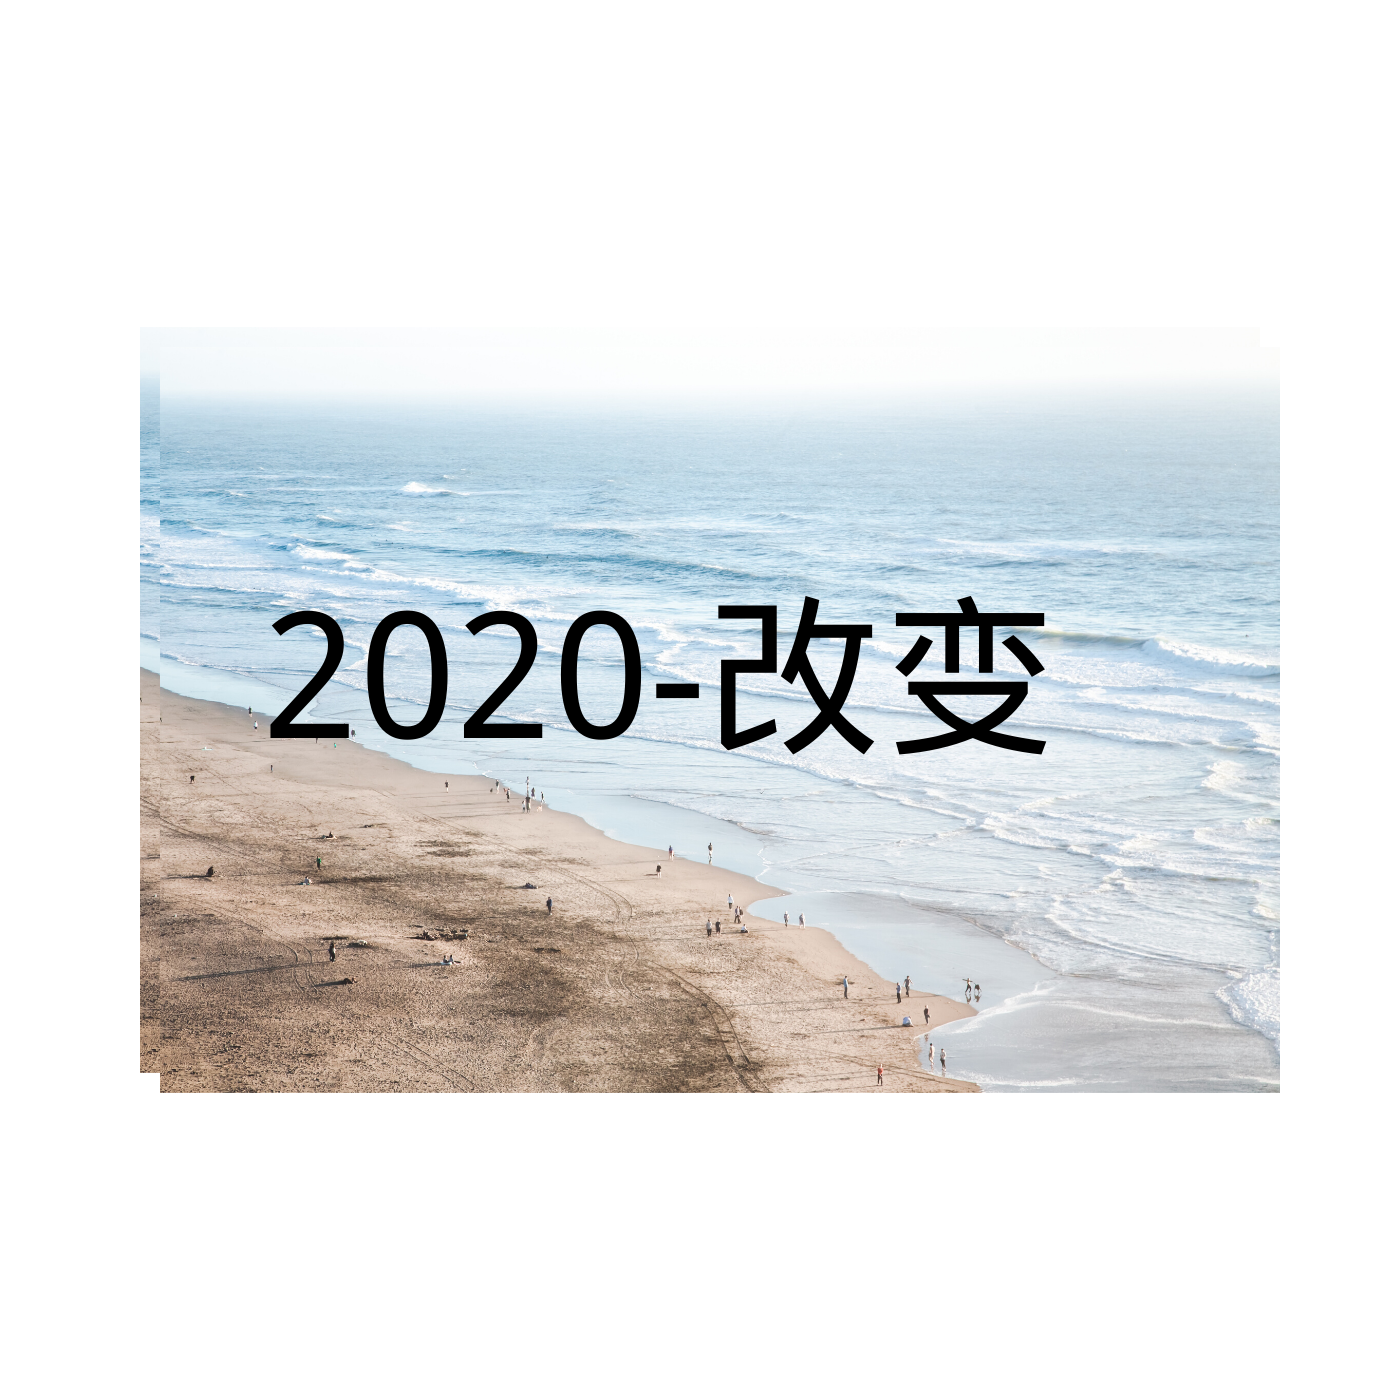 2020-改变